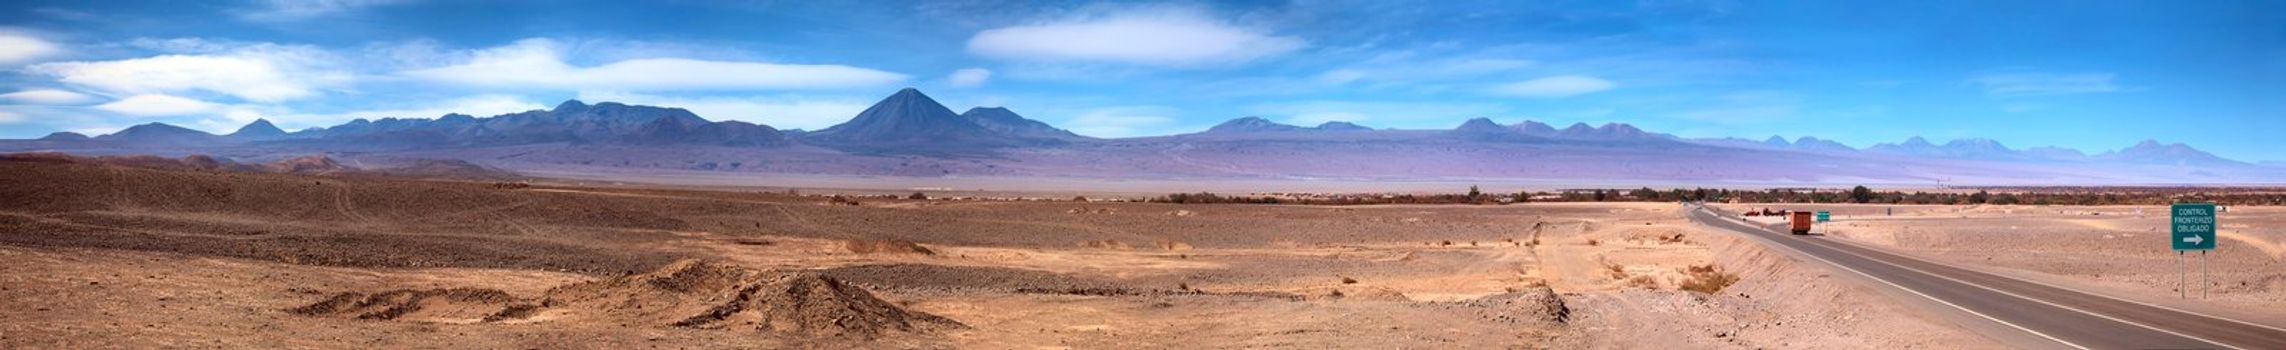 panoramic view of San Pedro de Atacama, Chile